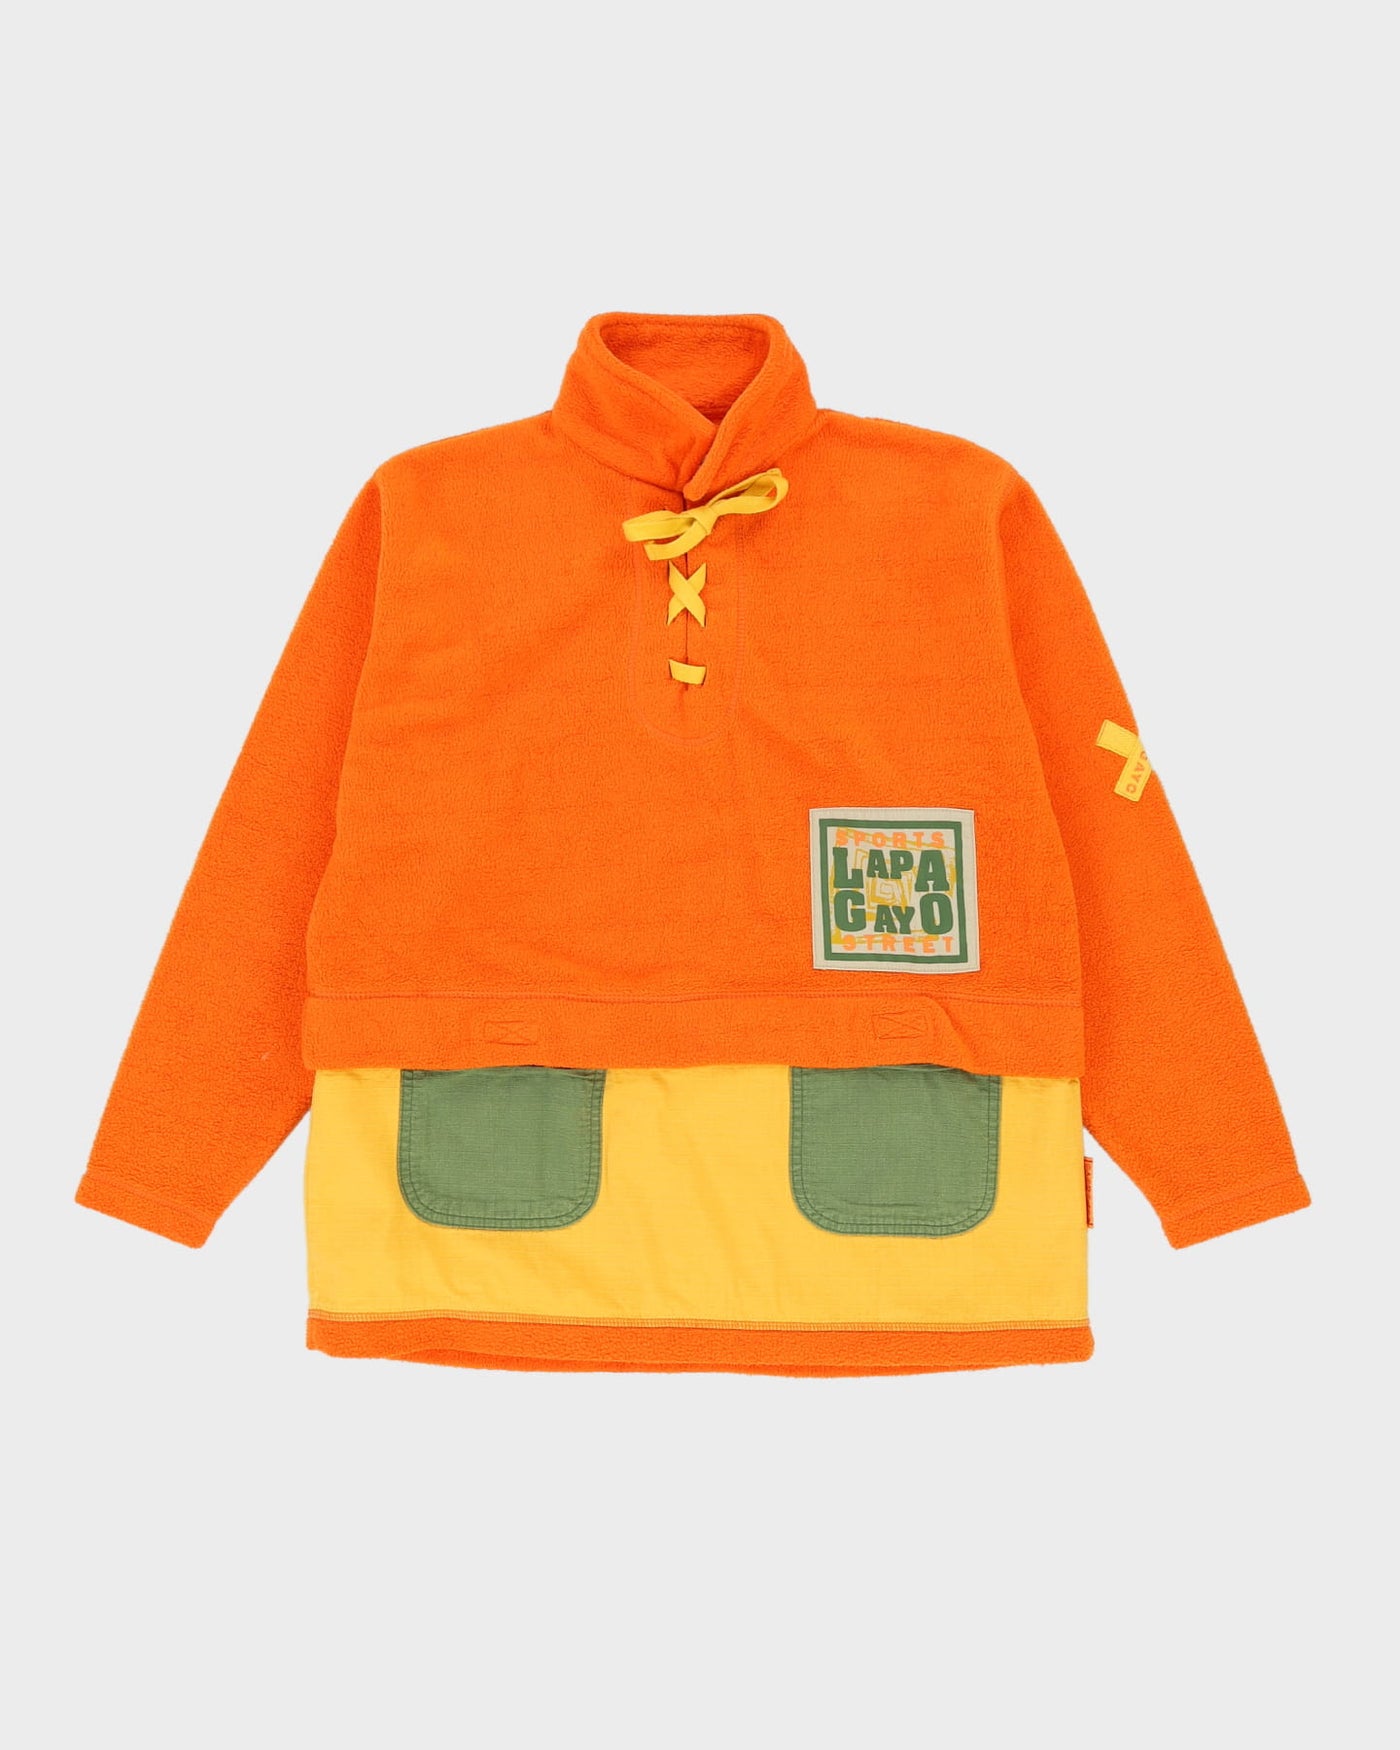 Vintage 90s Orange Fleece - M